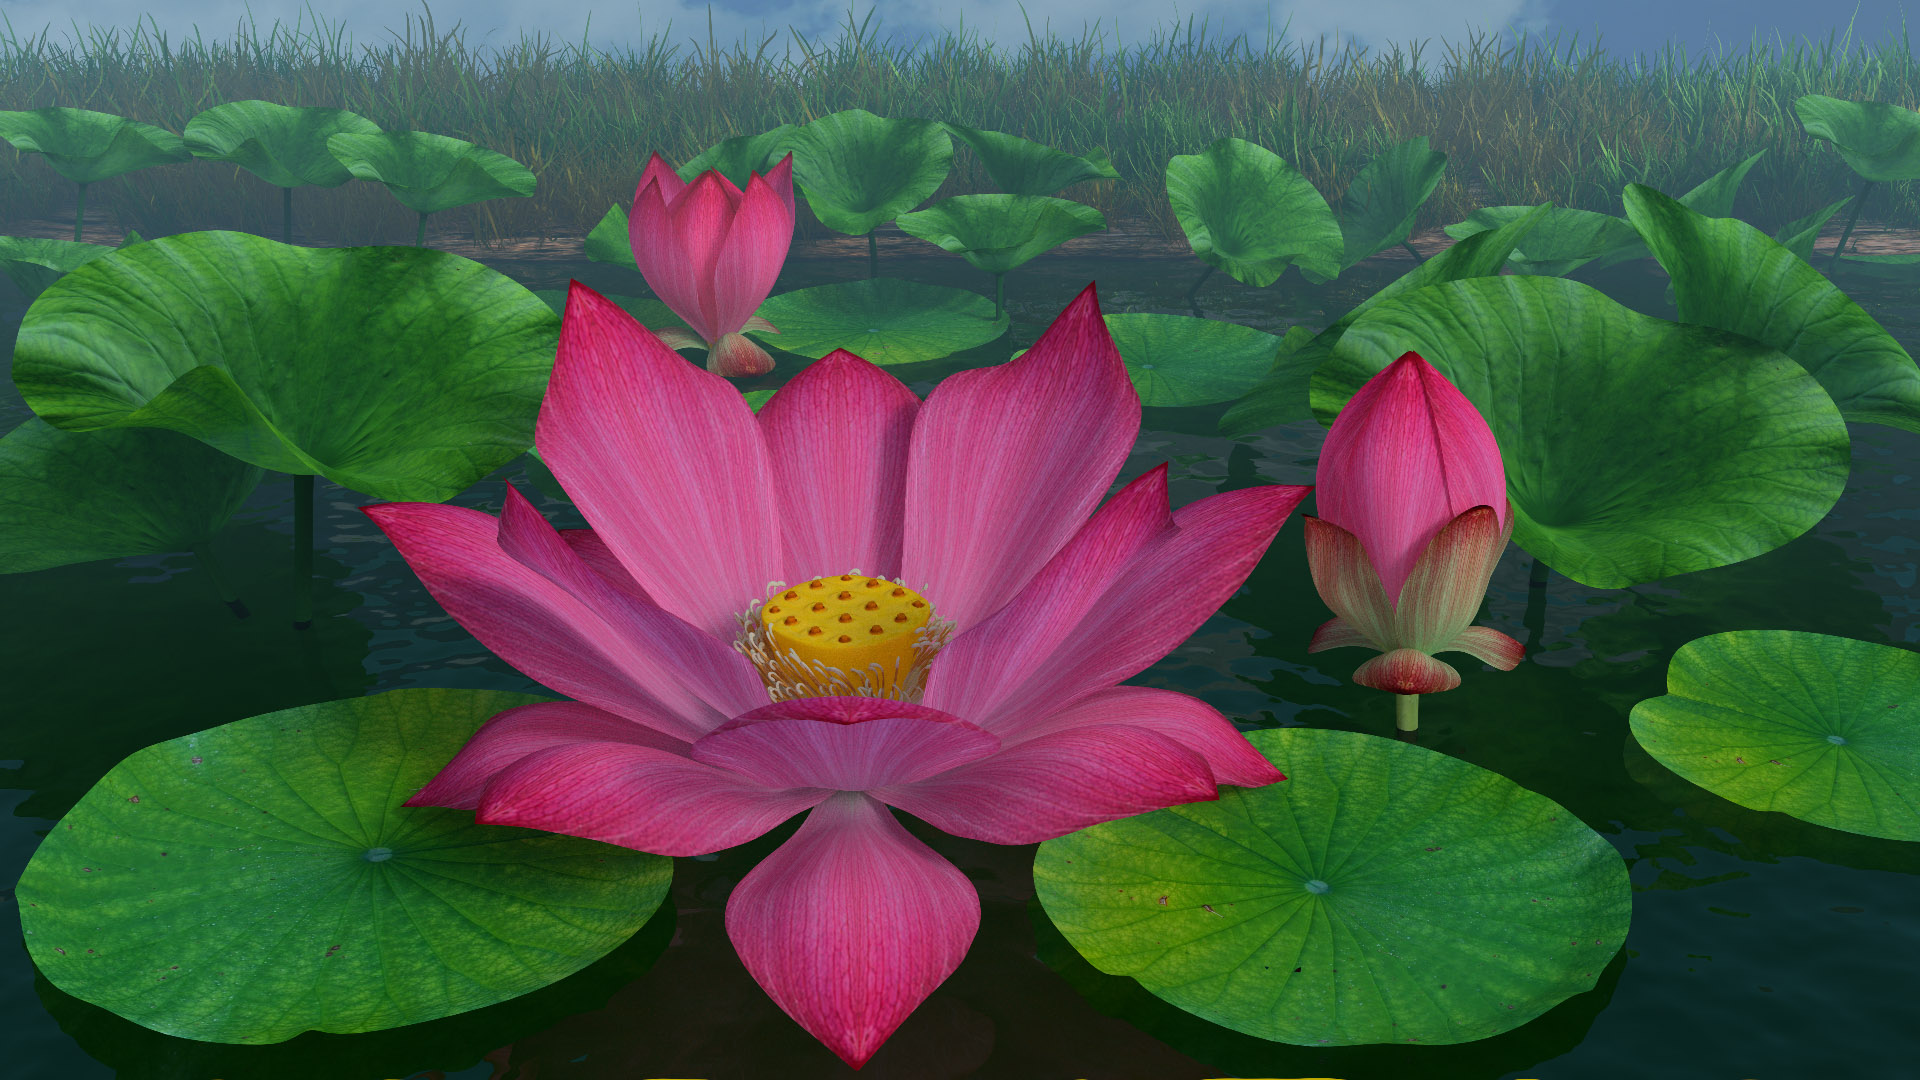 Pin on lotus pond